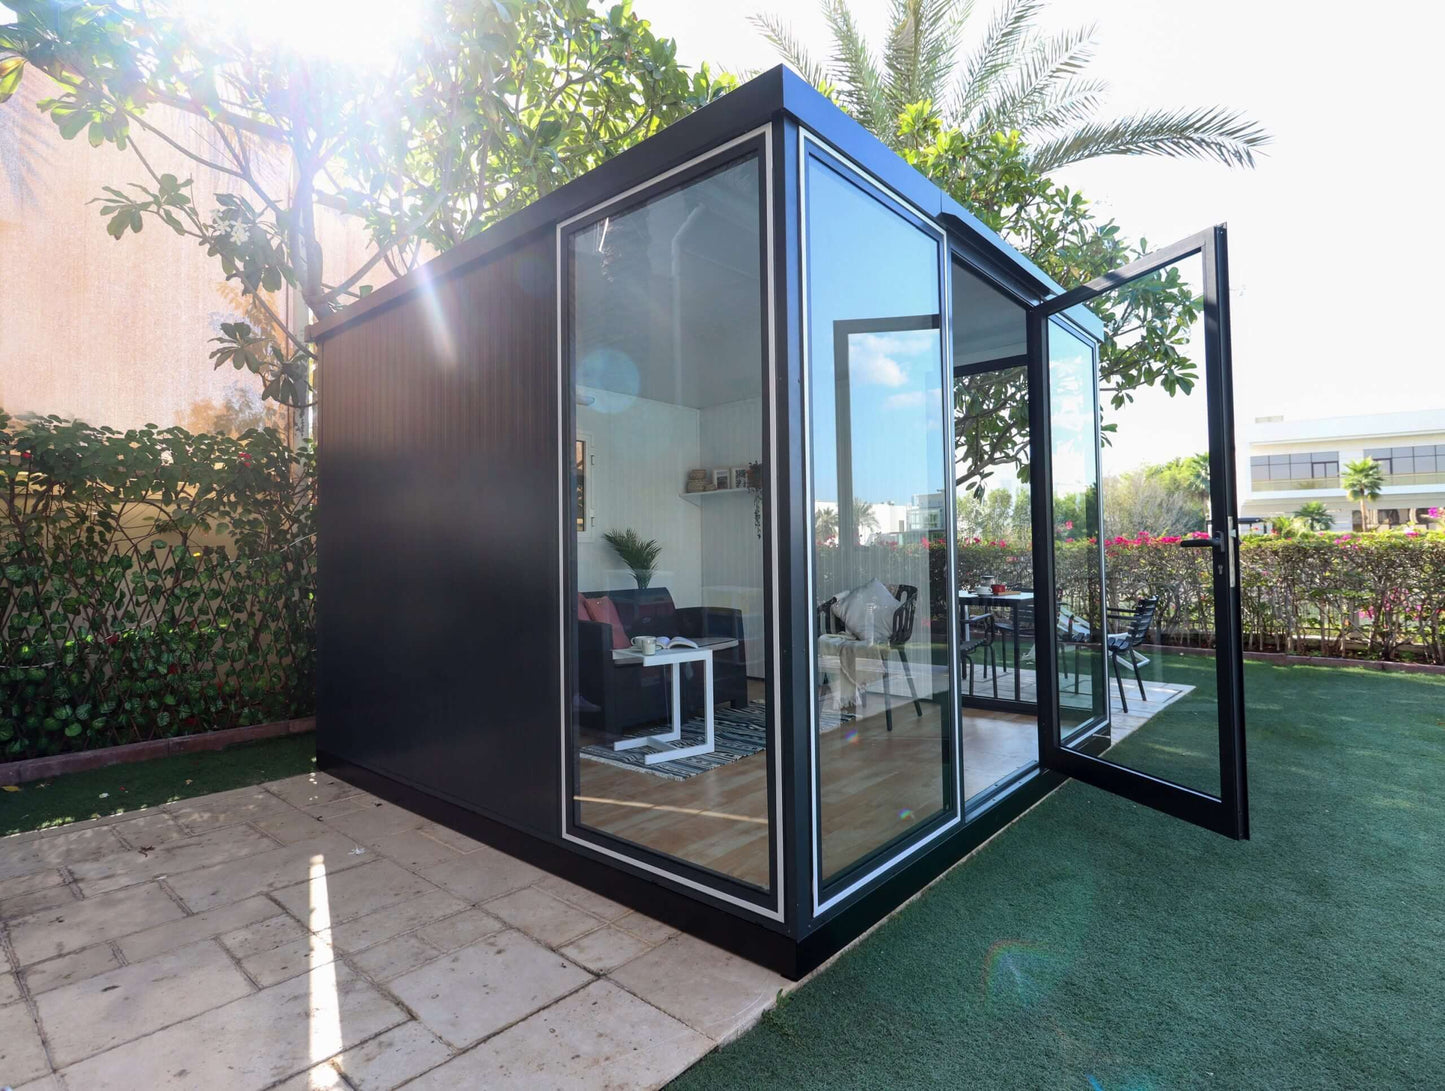 Duramax 10' x 10' Insulated Garden Glass Room Building 32001 side view door open